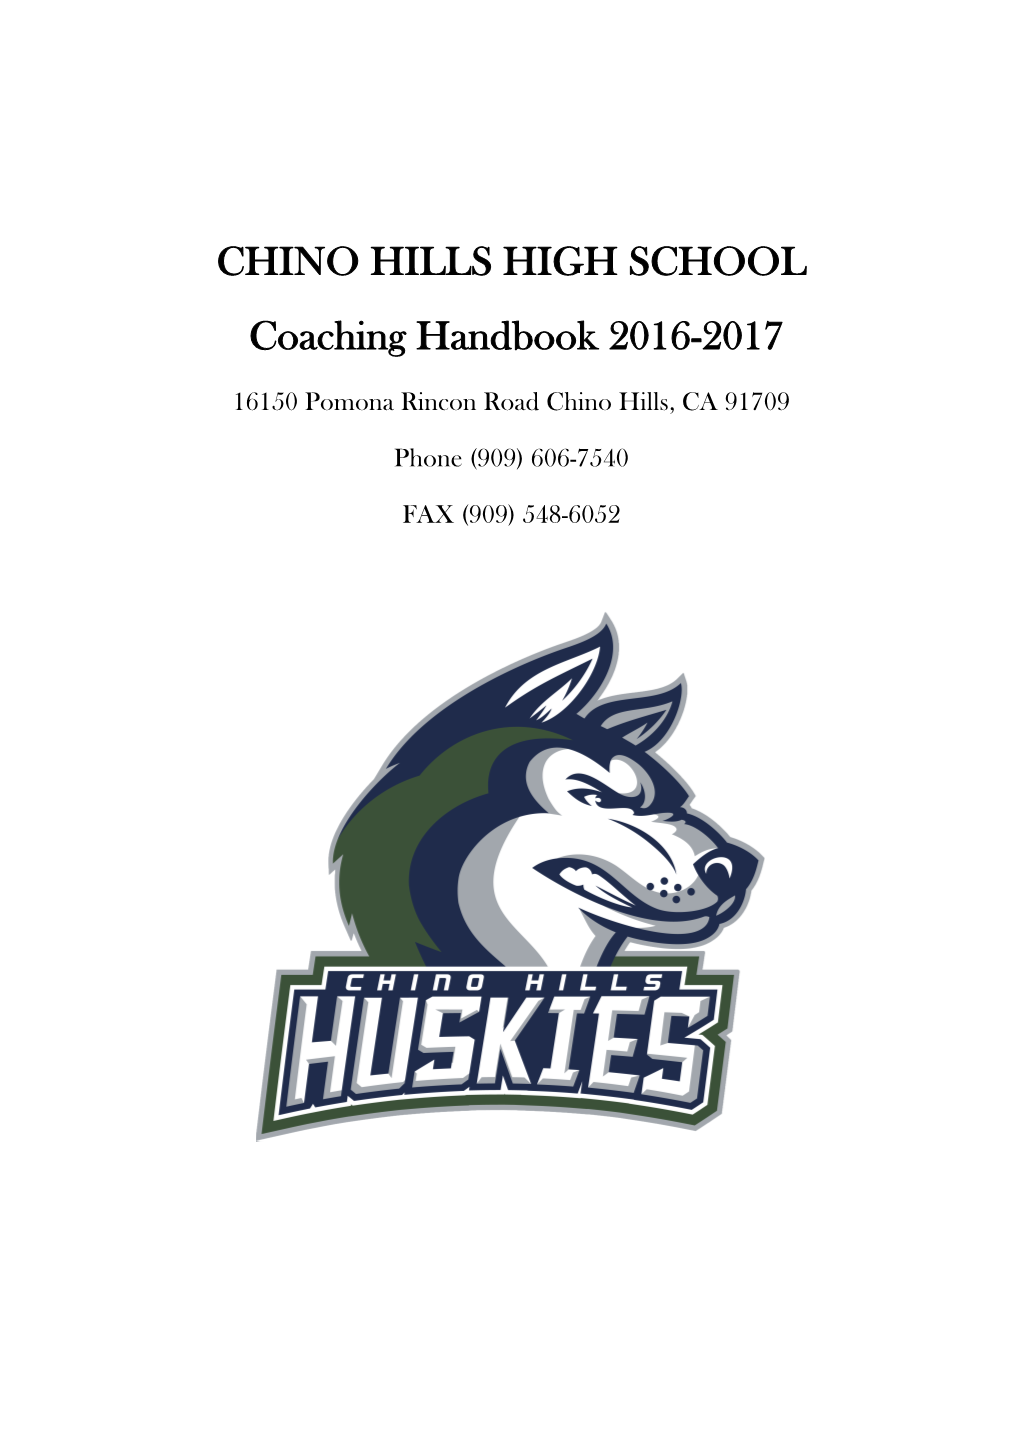 CHINO HILLS HIGH SCHOOL Coaching Handbook 2016-2017